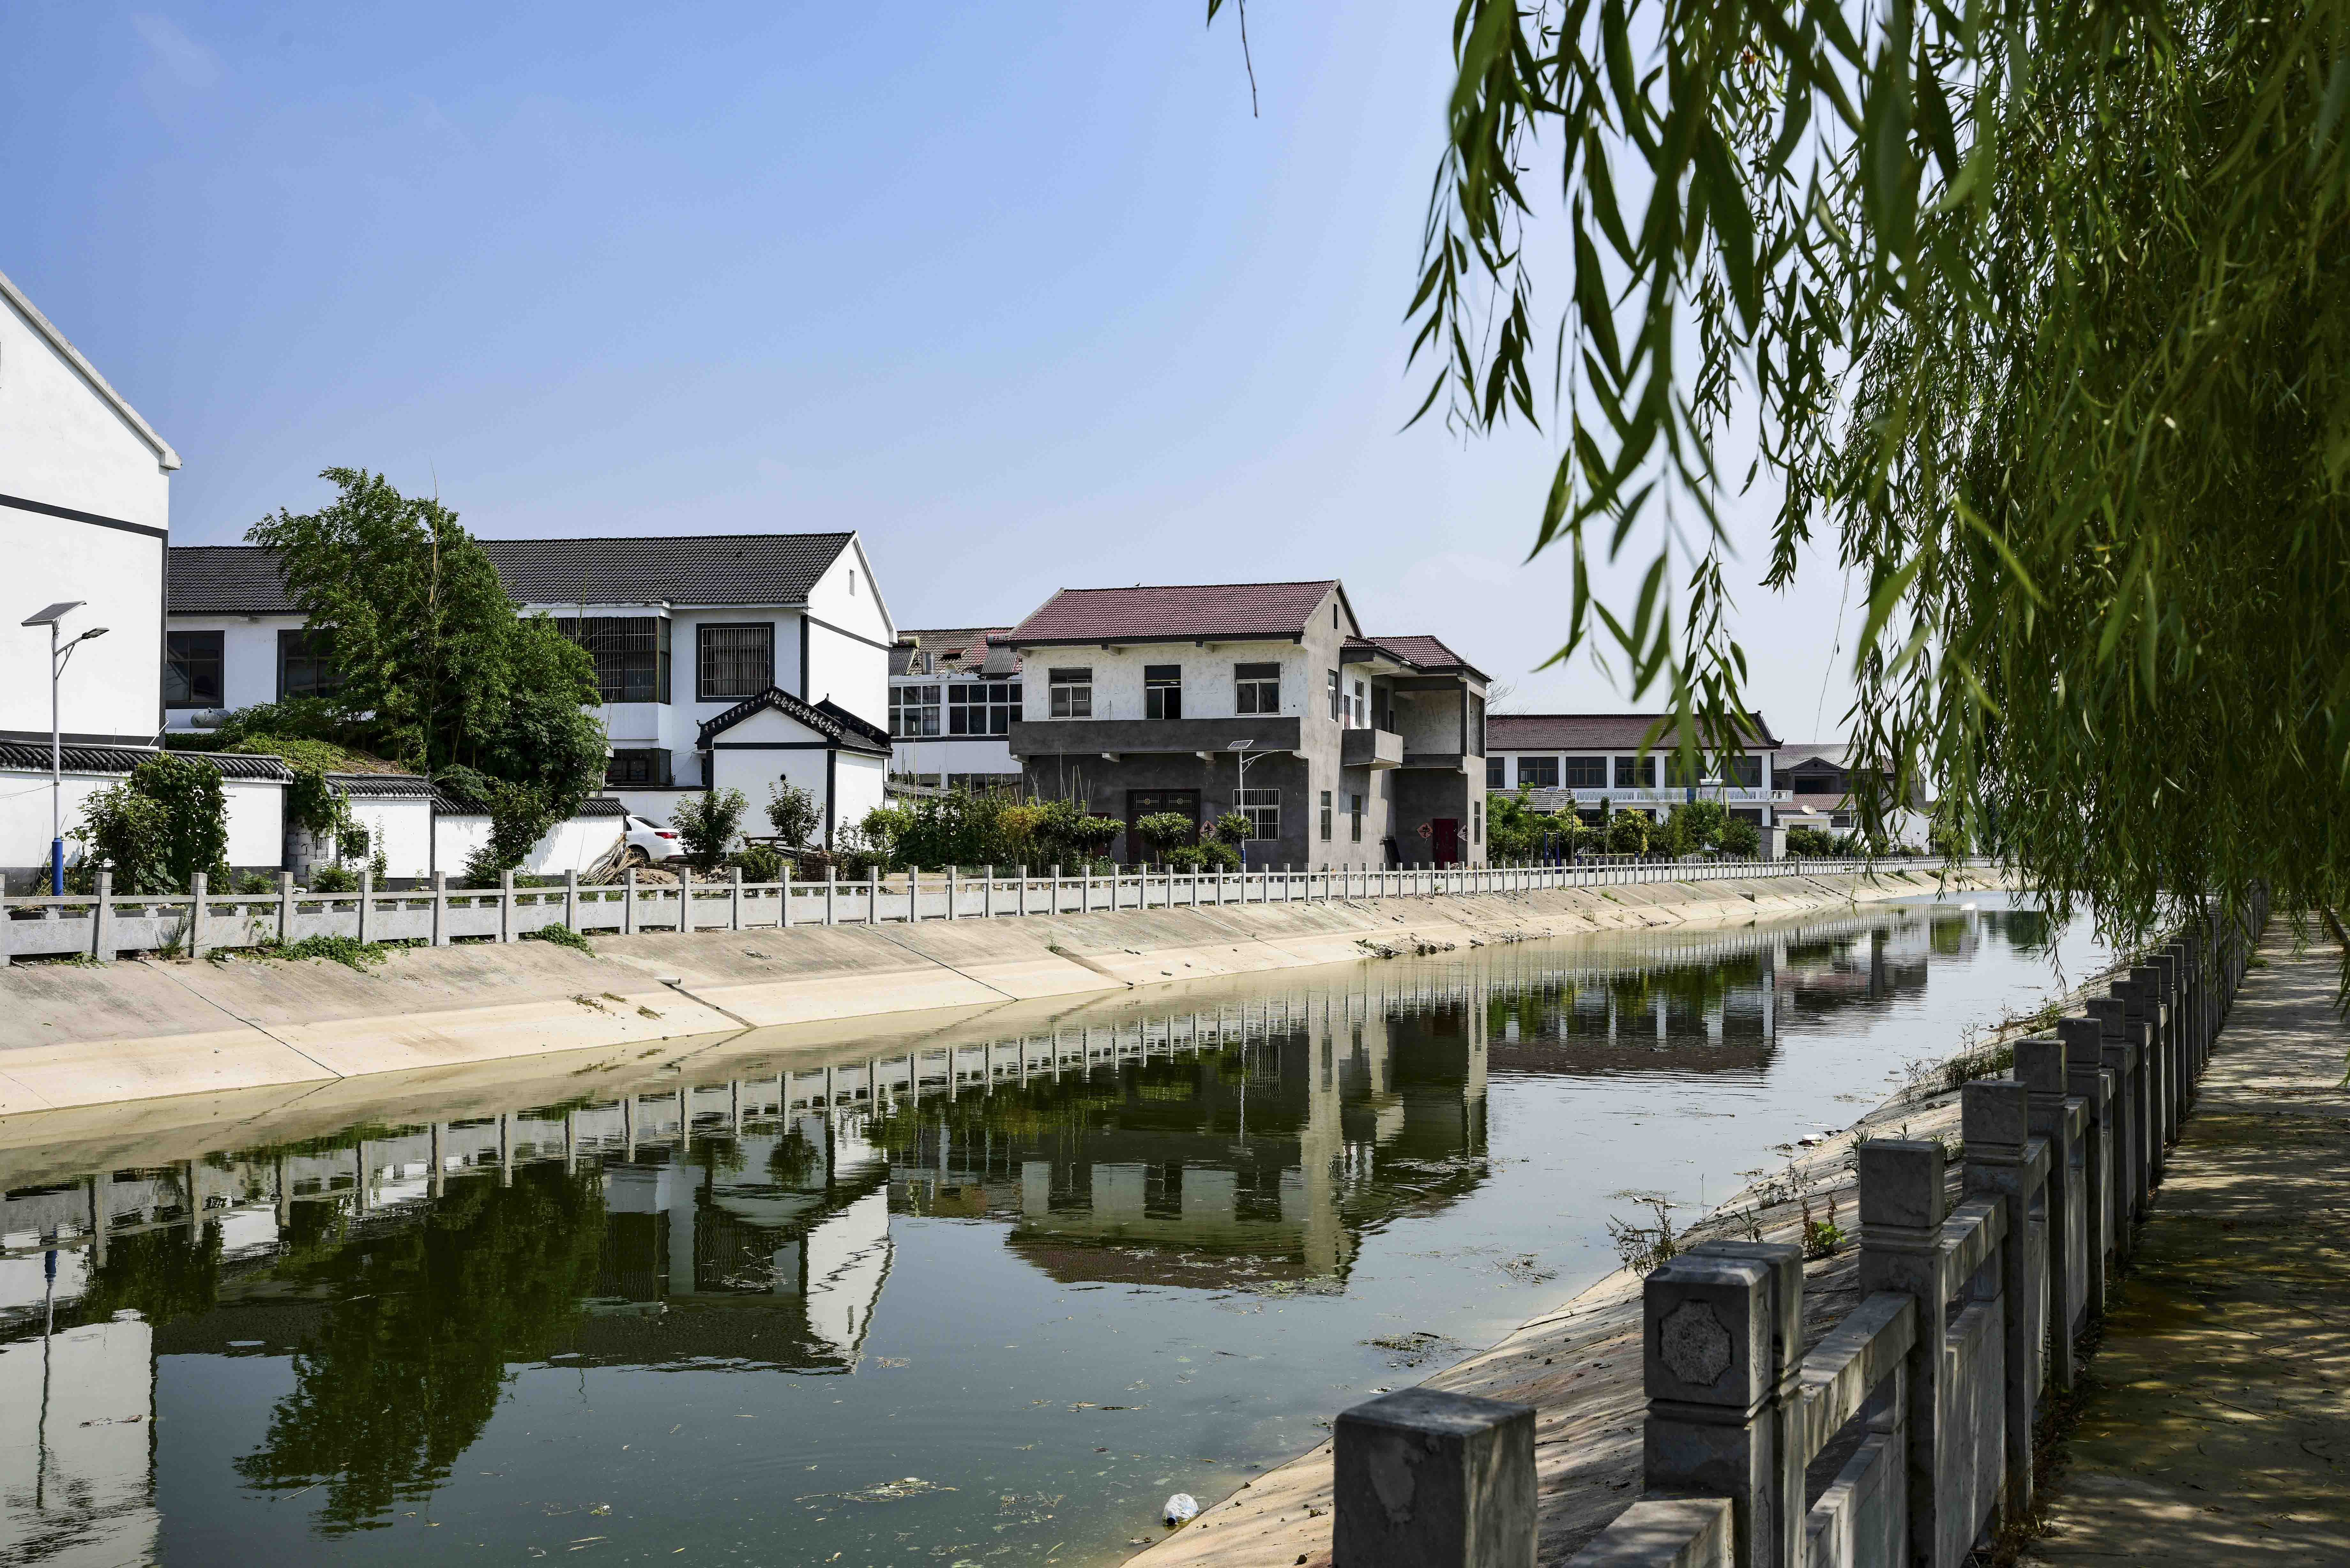 行走在徐州京杭大运河边的薛桥村看望百岁老人游览新农村美景